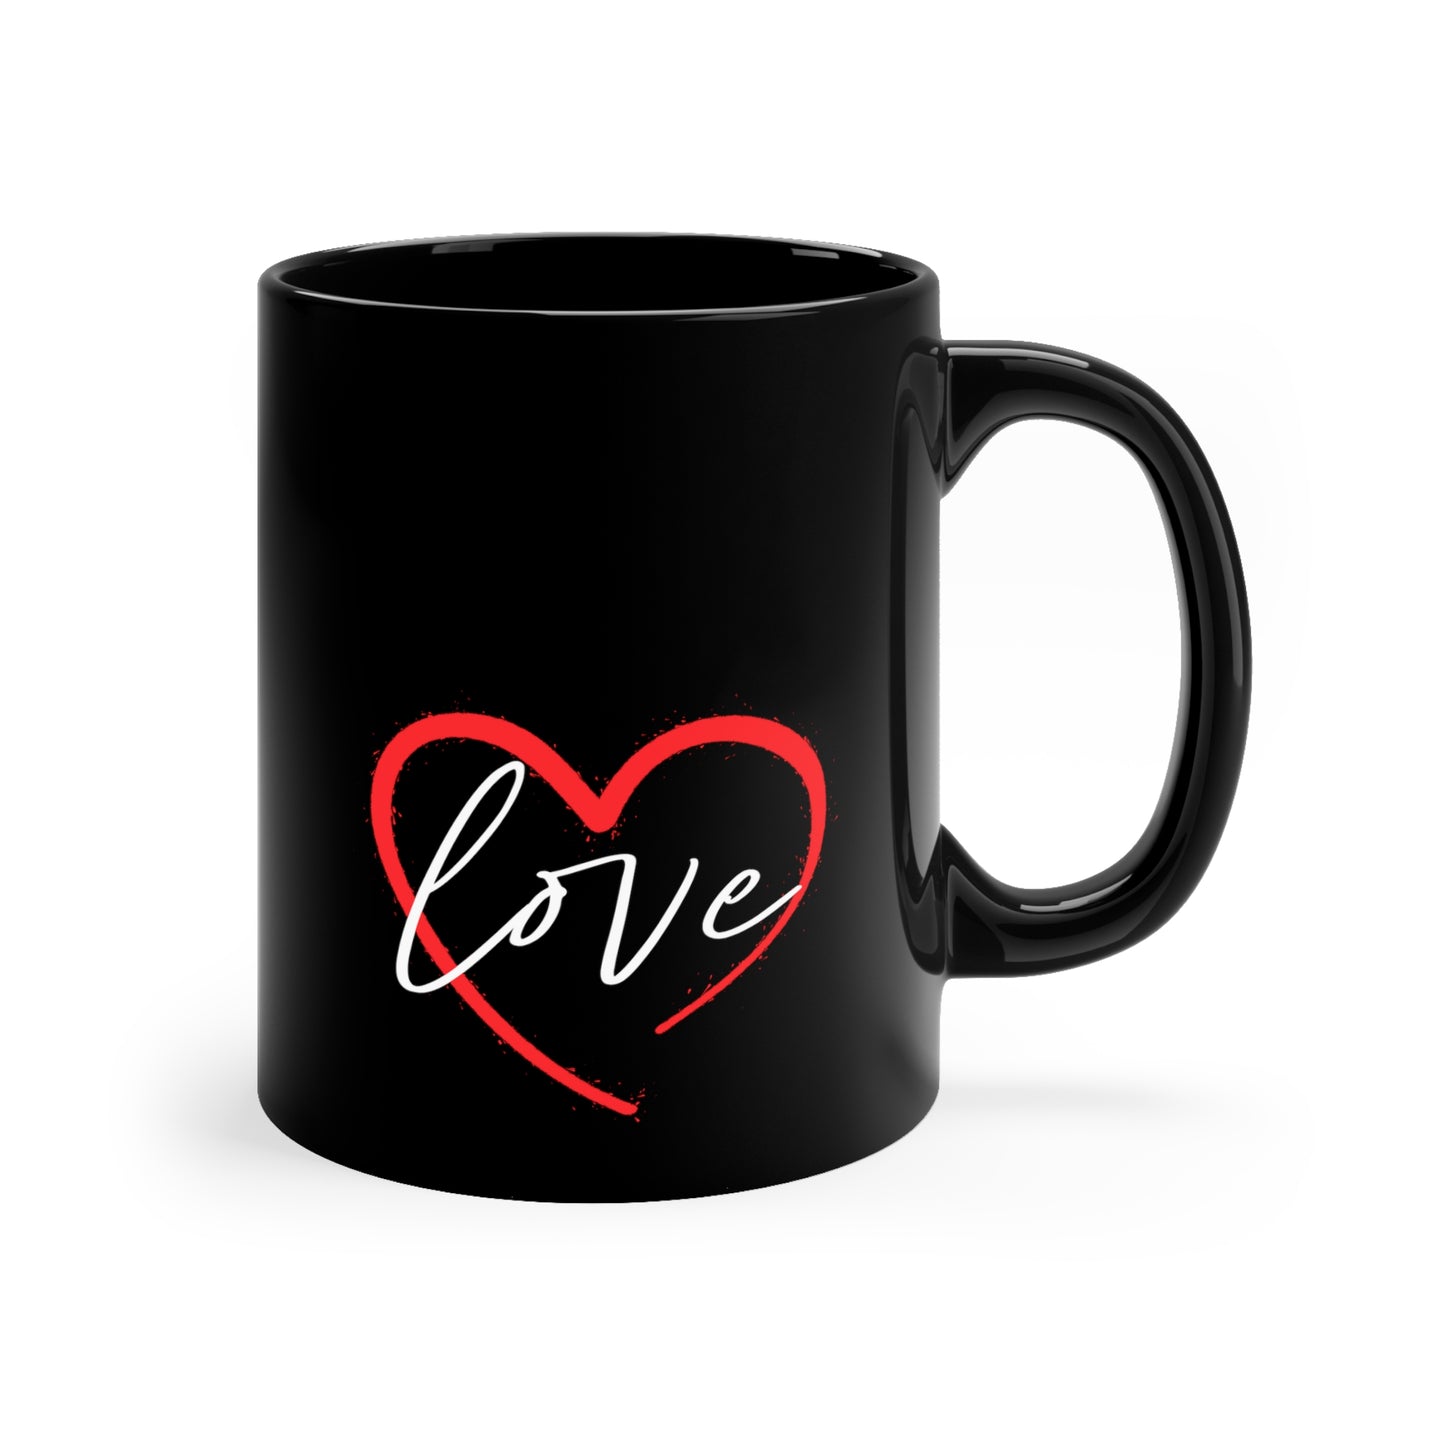 Love 11oz Black Mug